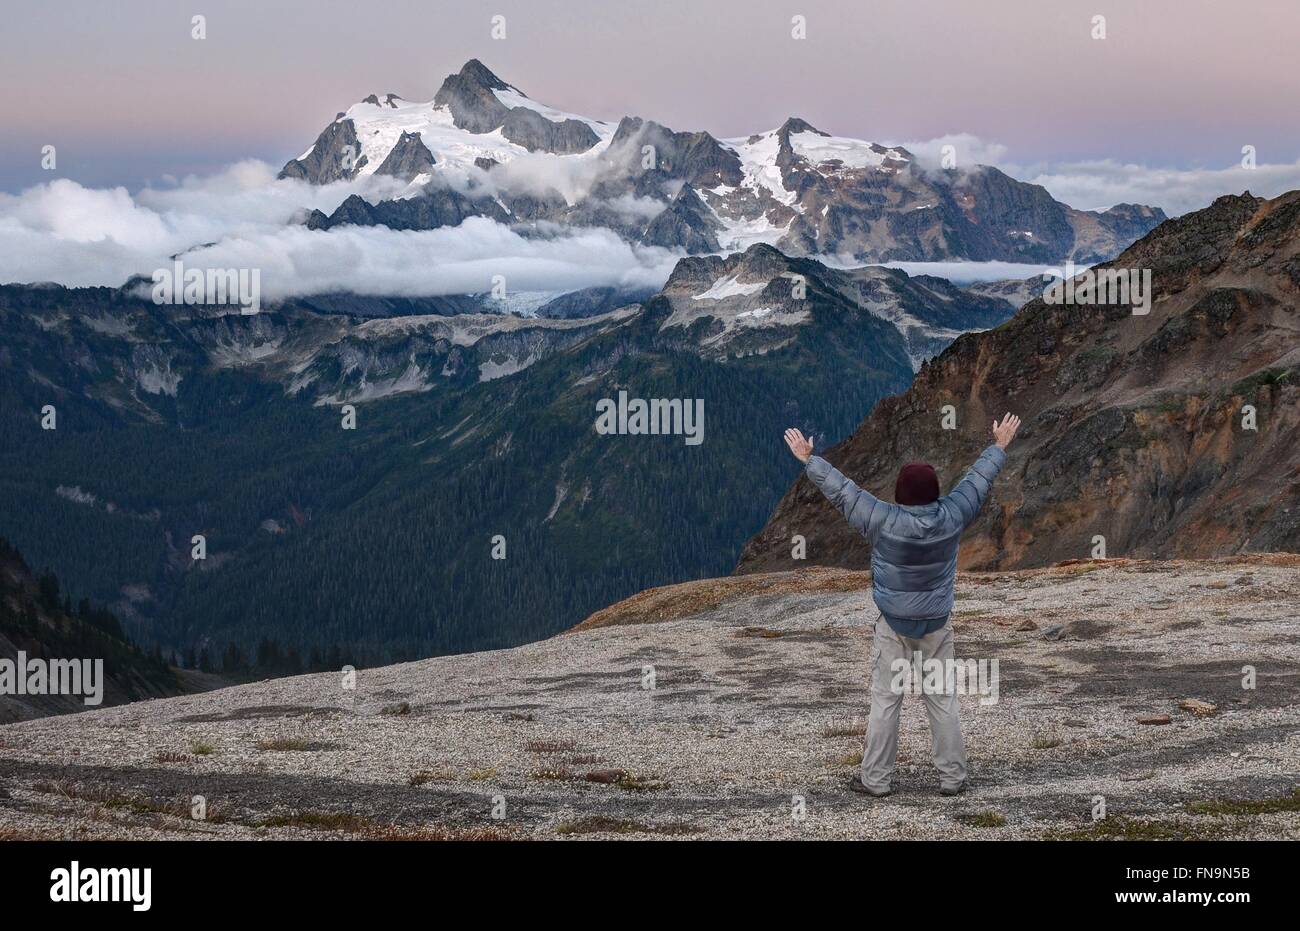 Hombre de pie con los brazos levantados, Mount Shuksan, Washington, Estados Unidos Foto de stock